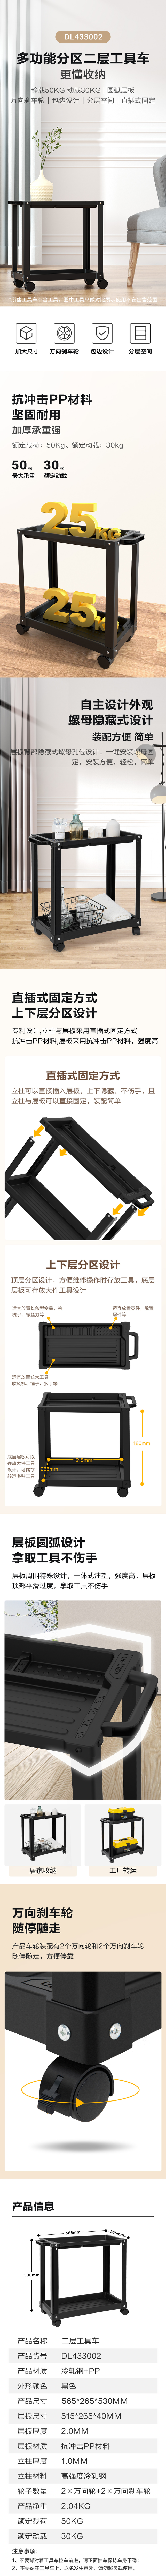 得力工具 DL433002 塑料二层工具车(黑)-565x265x530mm